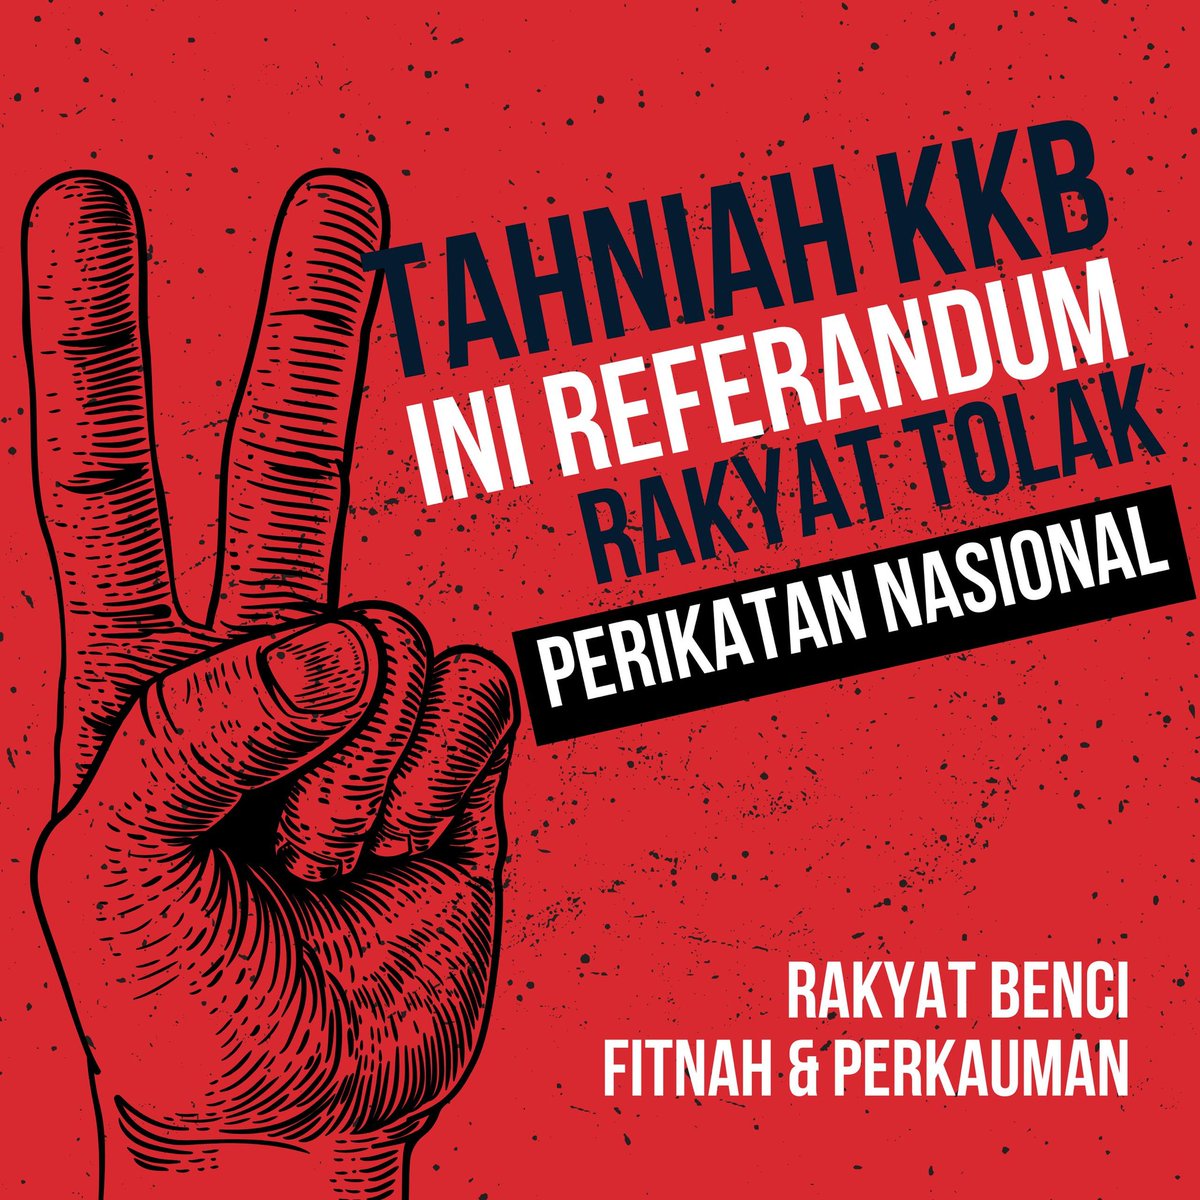 Tkasih pengundi Kuala Kubu Bharu ❤️